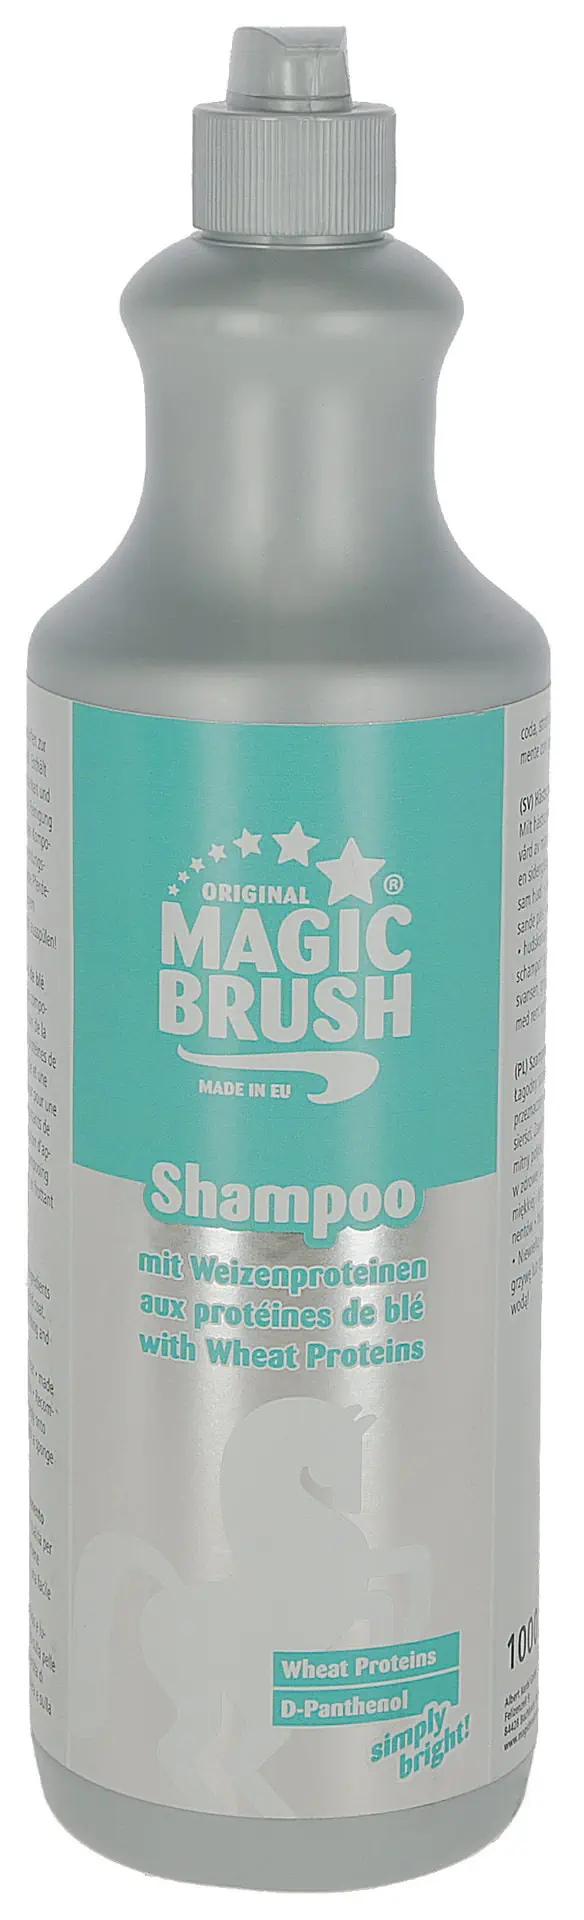 MagicBrush Hästschampo med veteprotein 1 liter